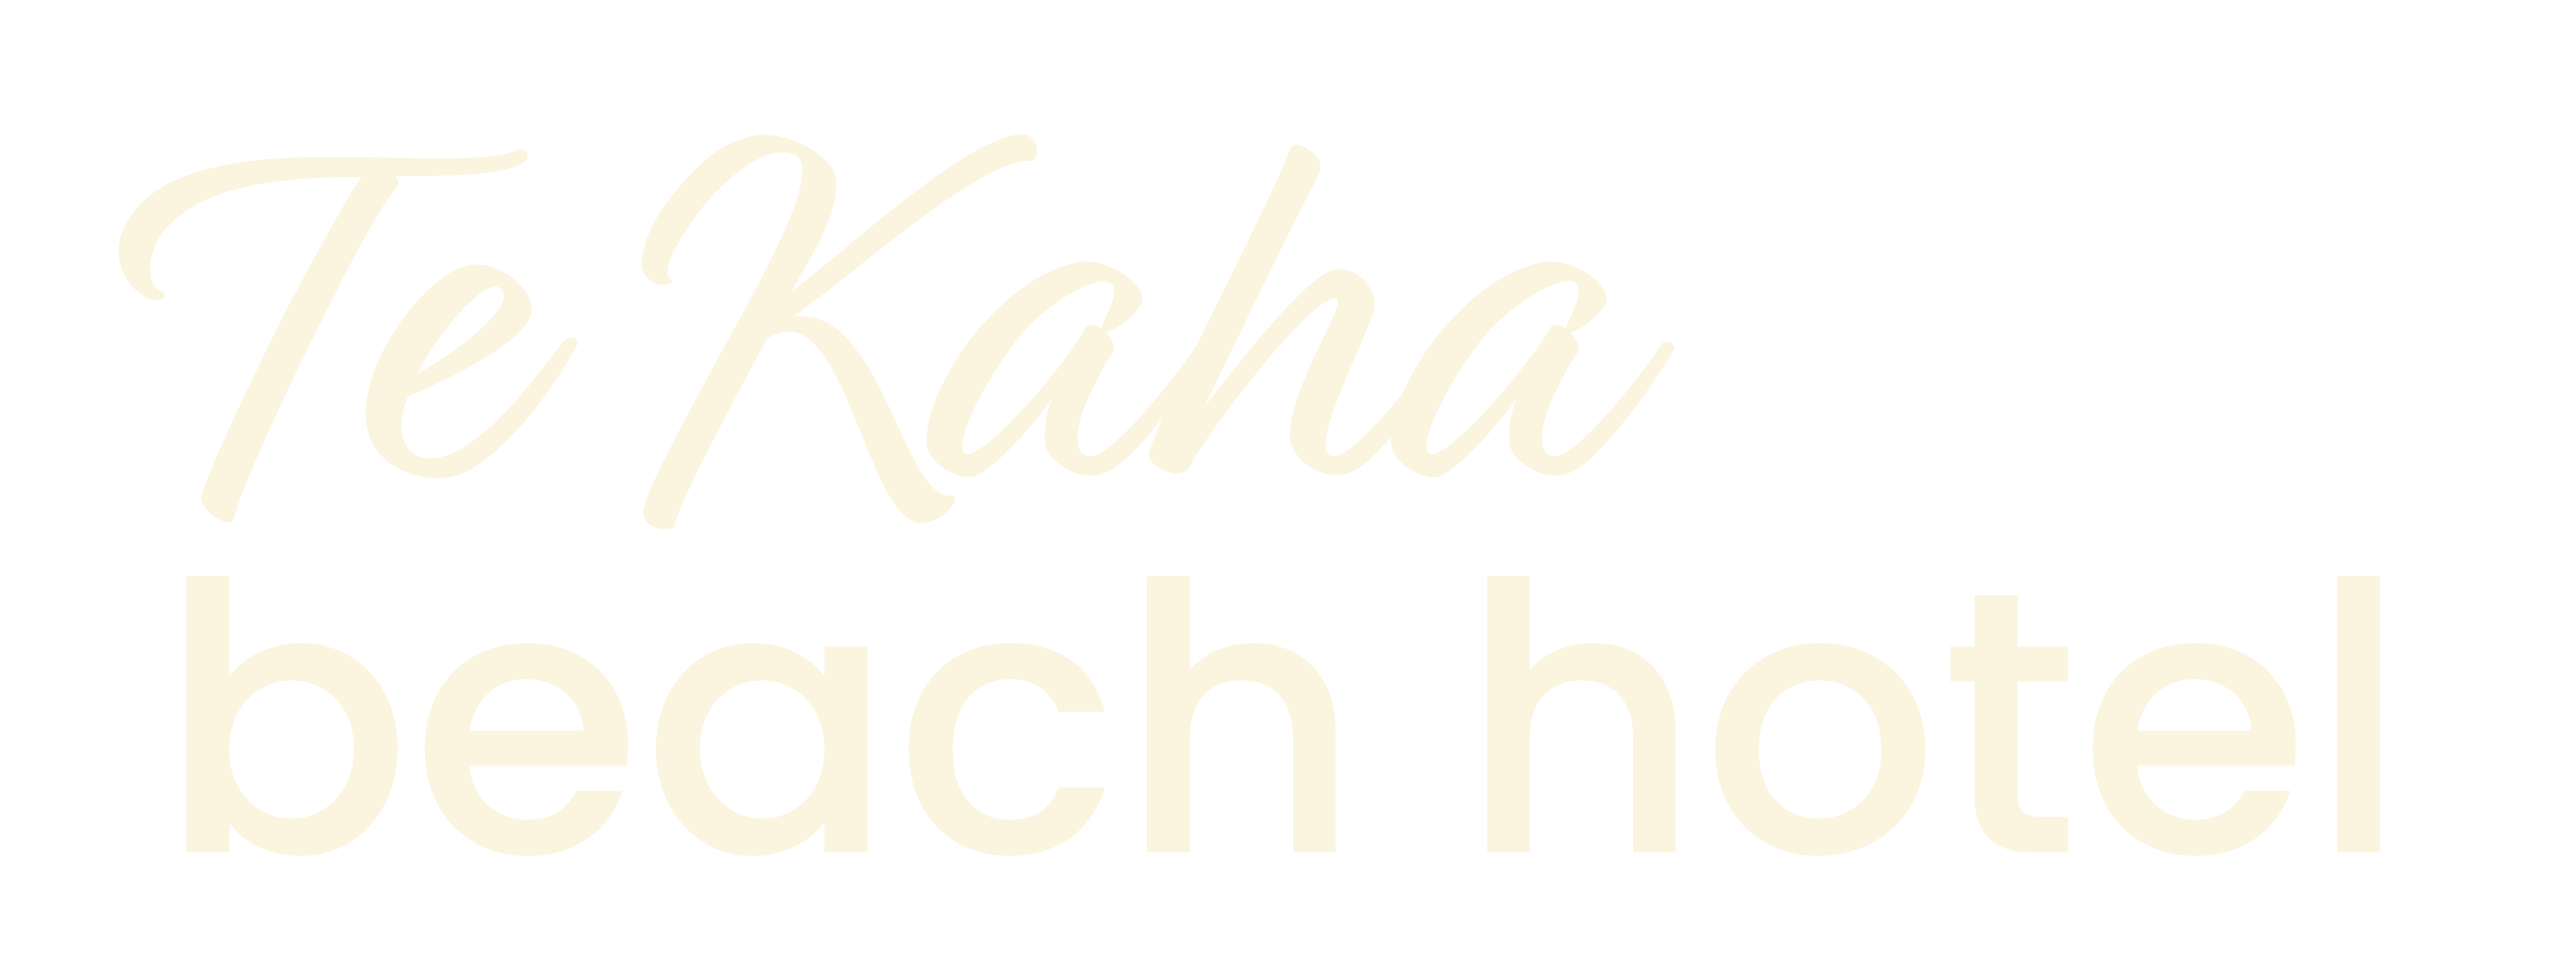 Te Kaha Beach Hotel